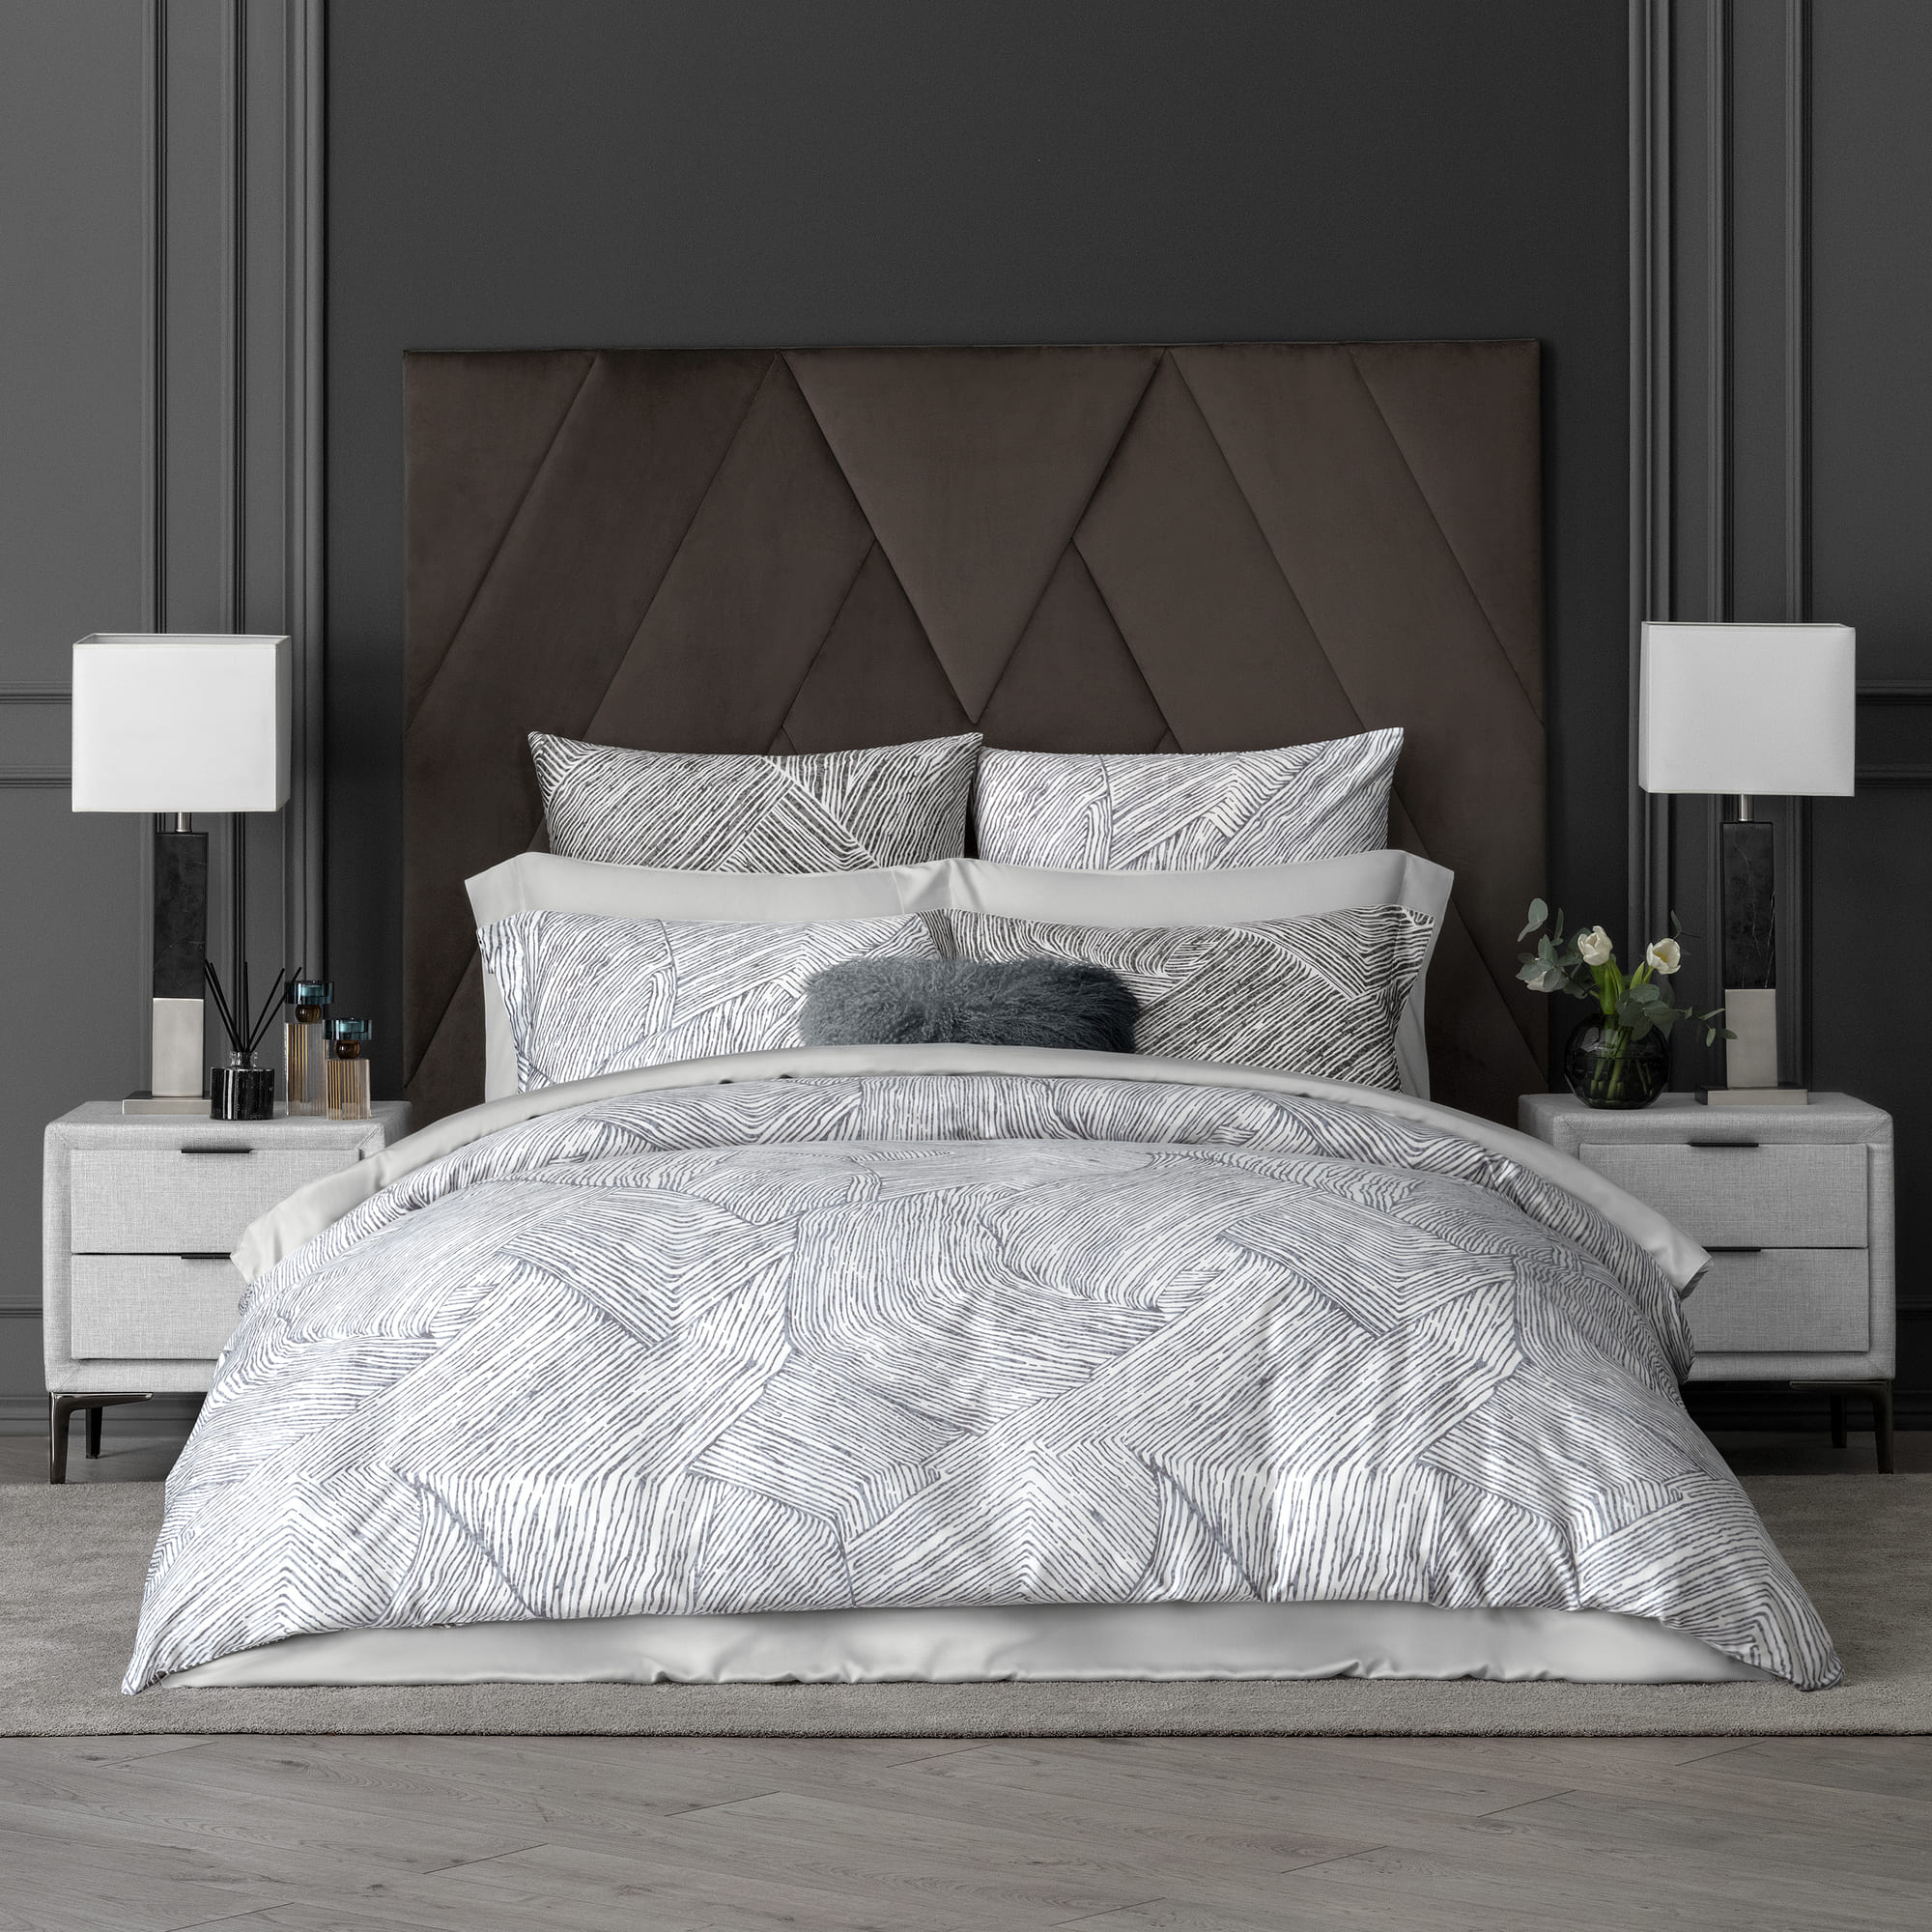 Комплект постельного белья Togas Ферранте серый Полуторный, размер Полуторный - фото 2